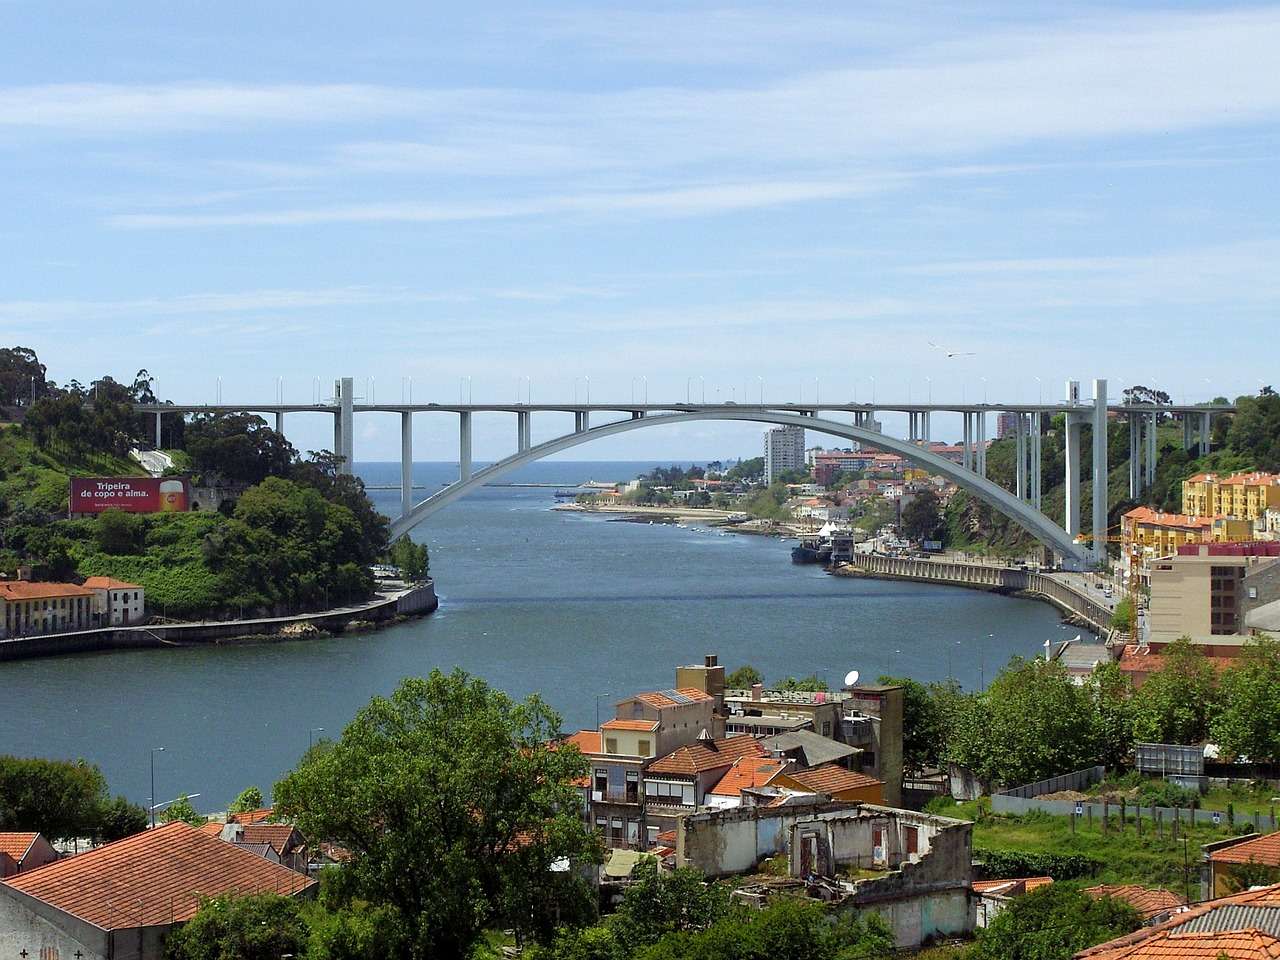 Porto in Portogallo puzzle online